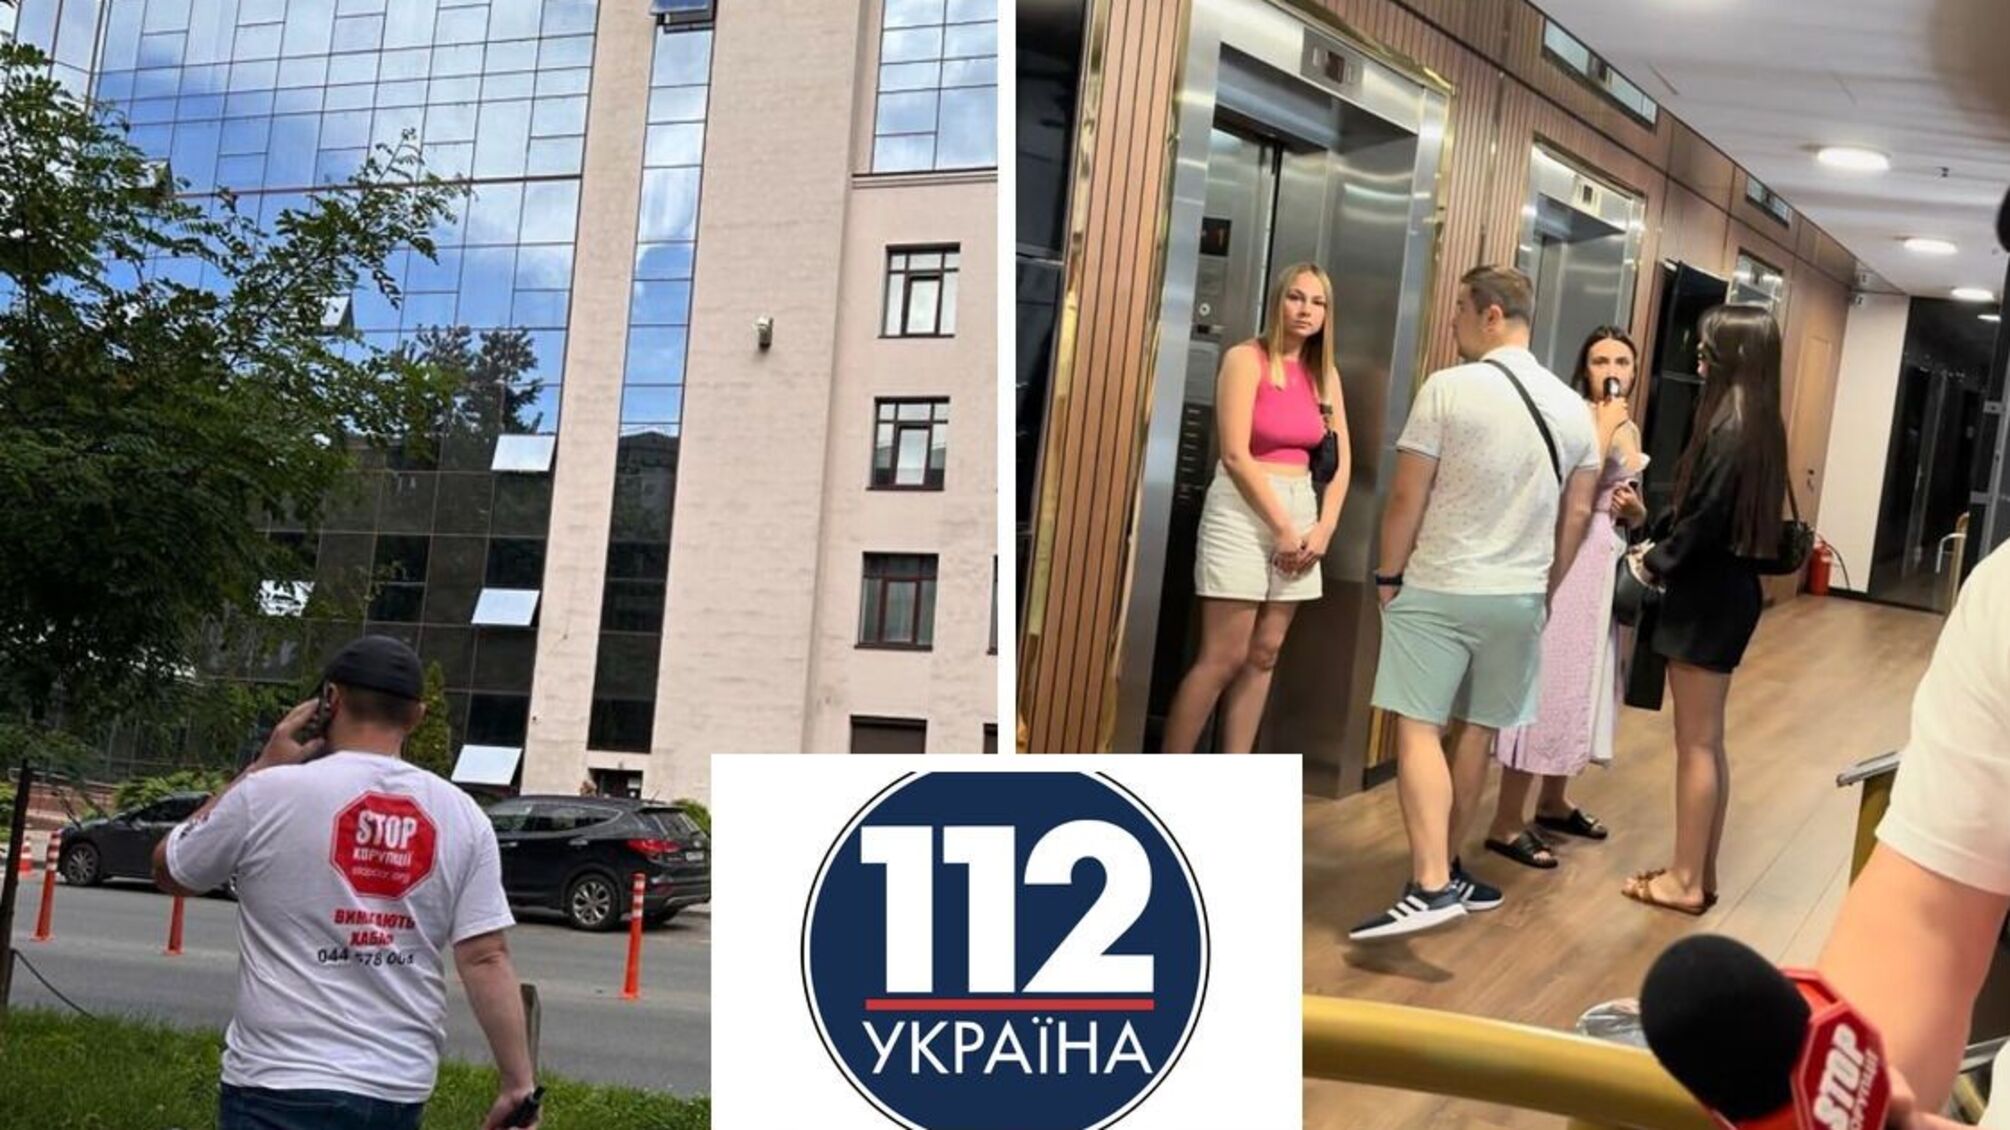 мошеннический колл-центр в бывшем здании телеканала '112 Украина'